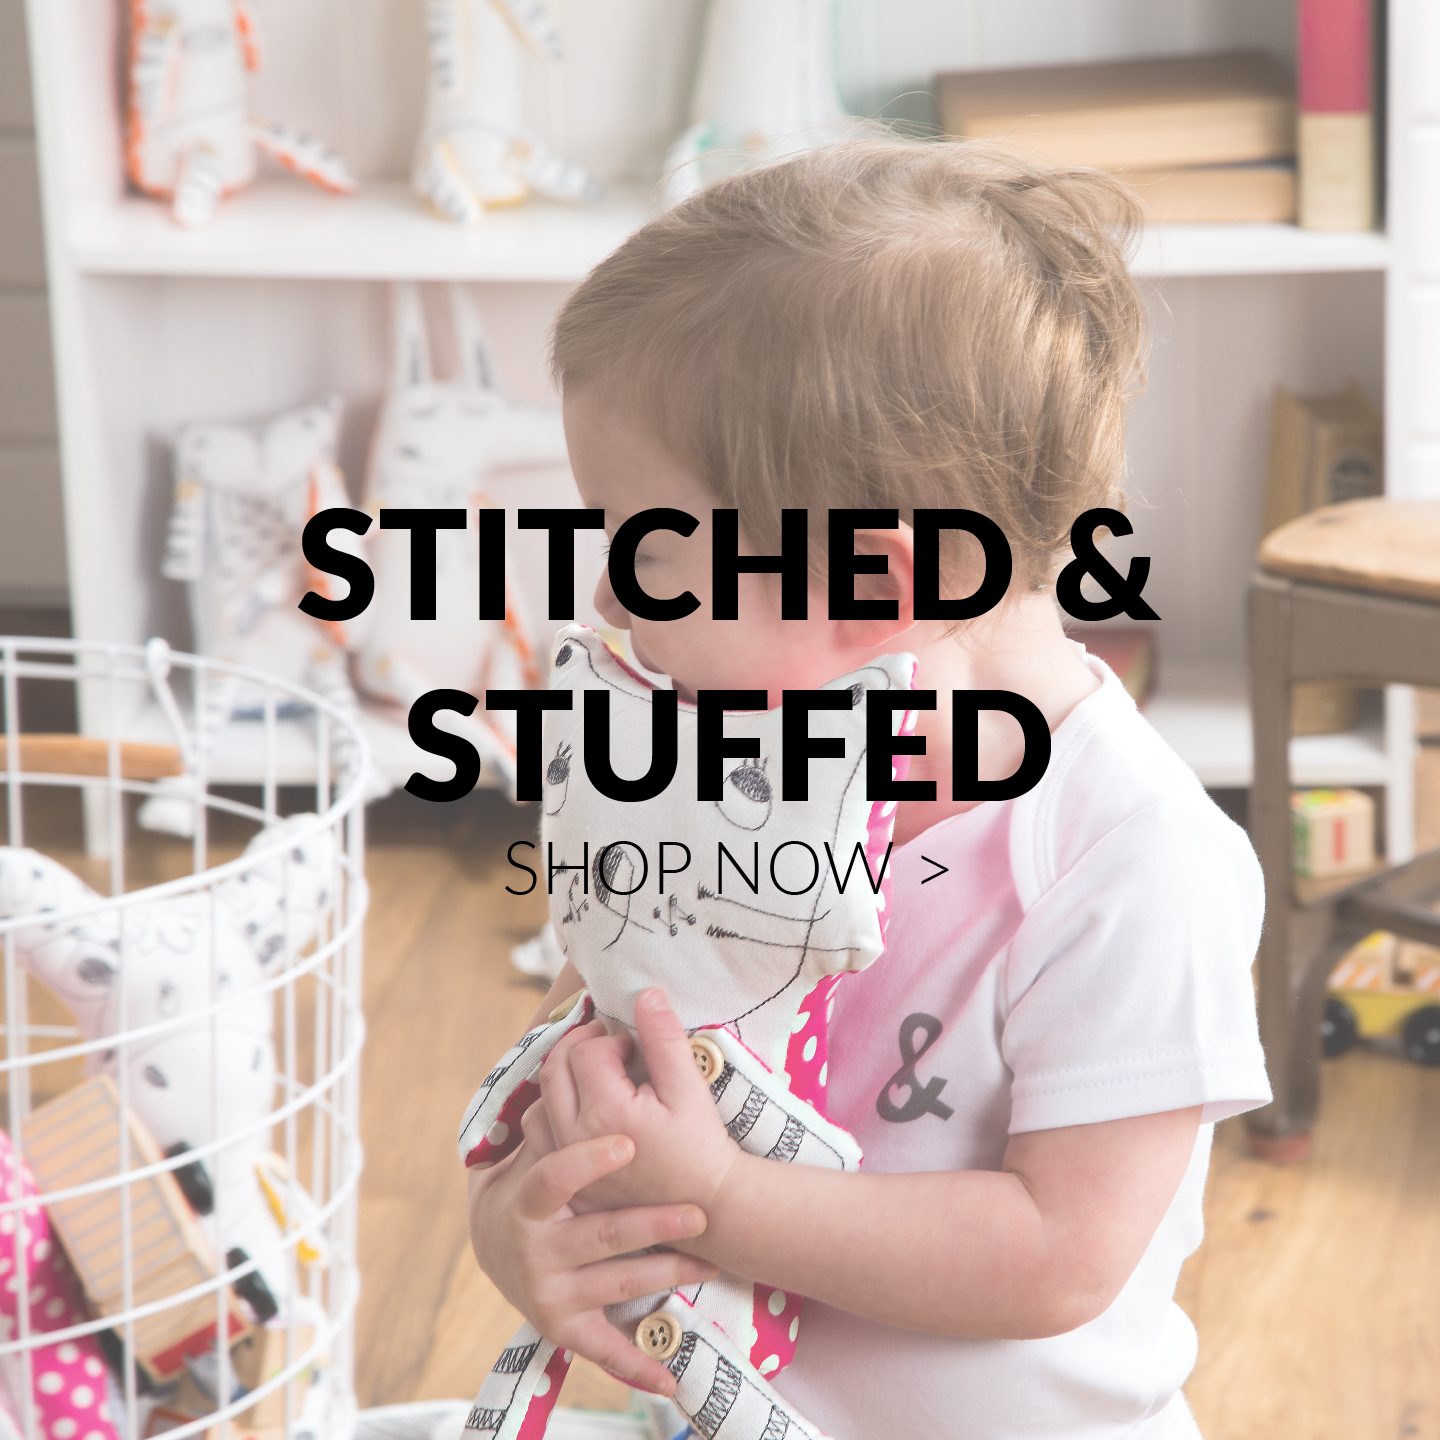 Stitched & Stuffed